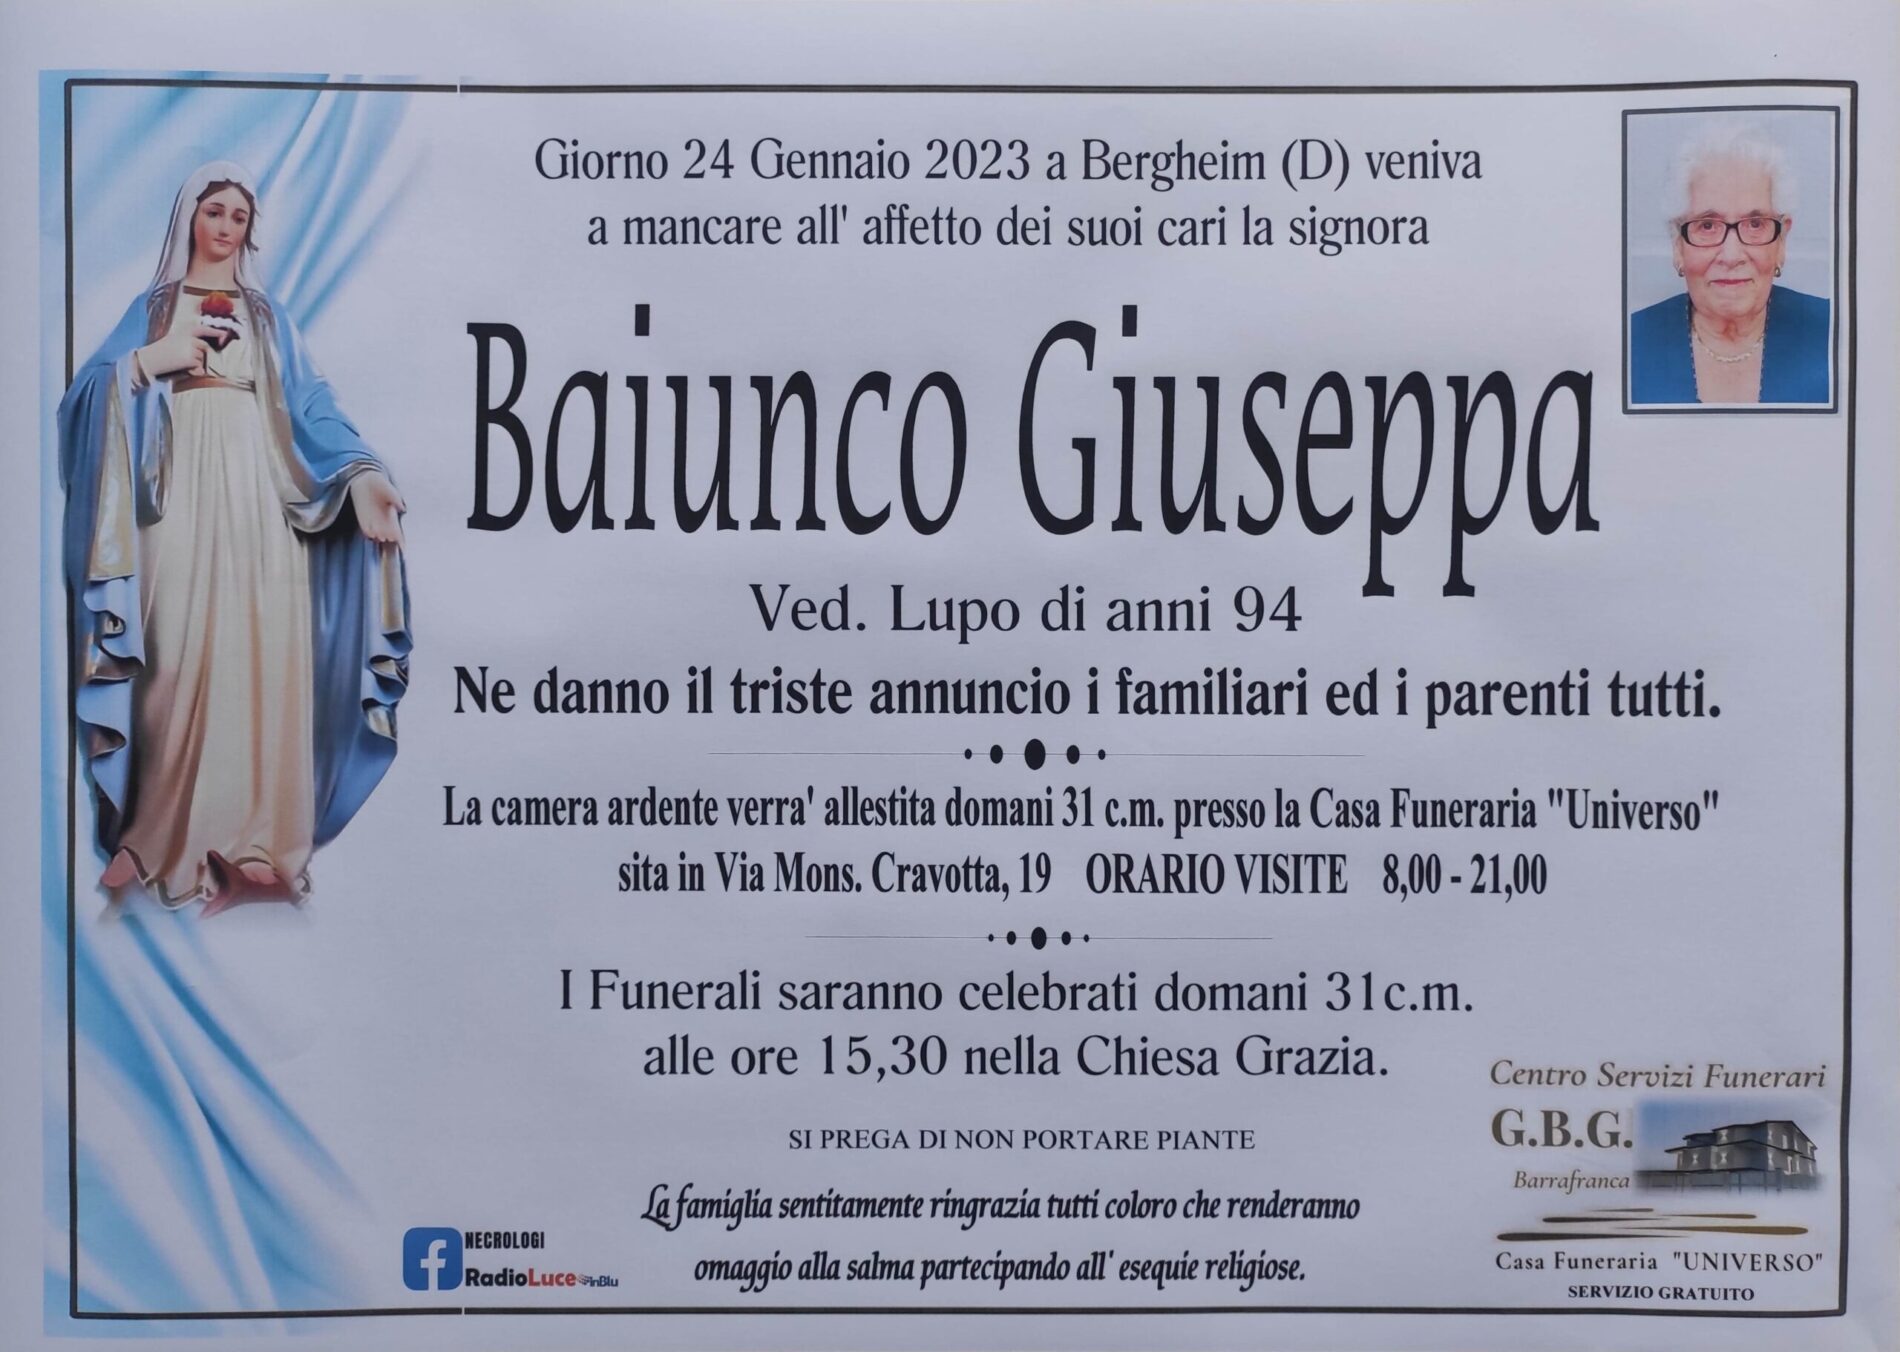 Annuncio servizi funerari agenzia G.B.G. signora Baiunco Giuseppa ved. Lupo di anni 94